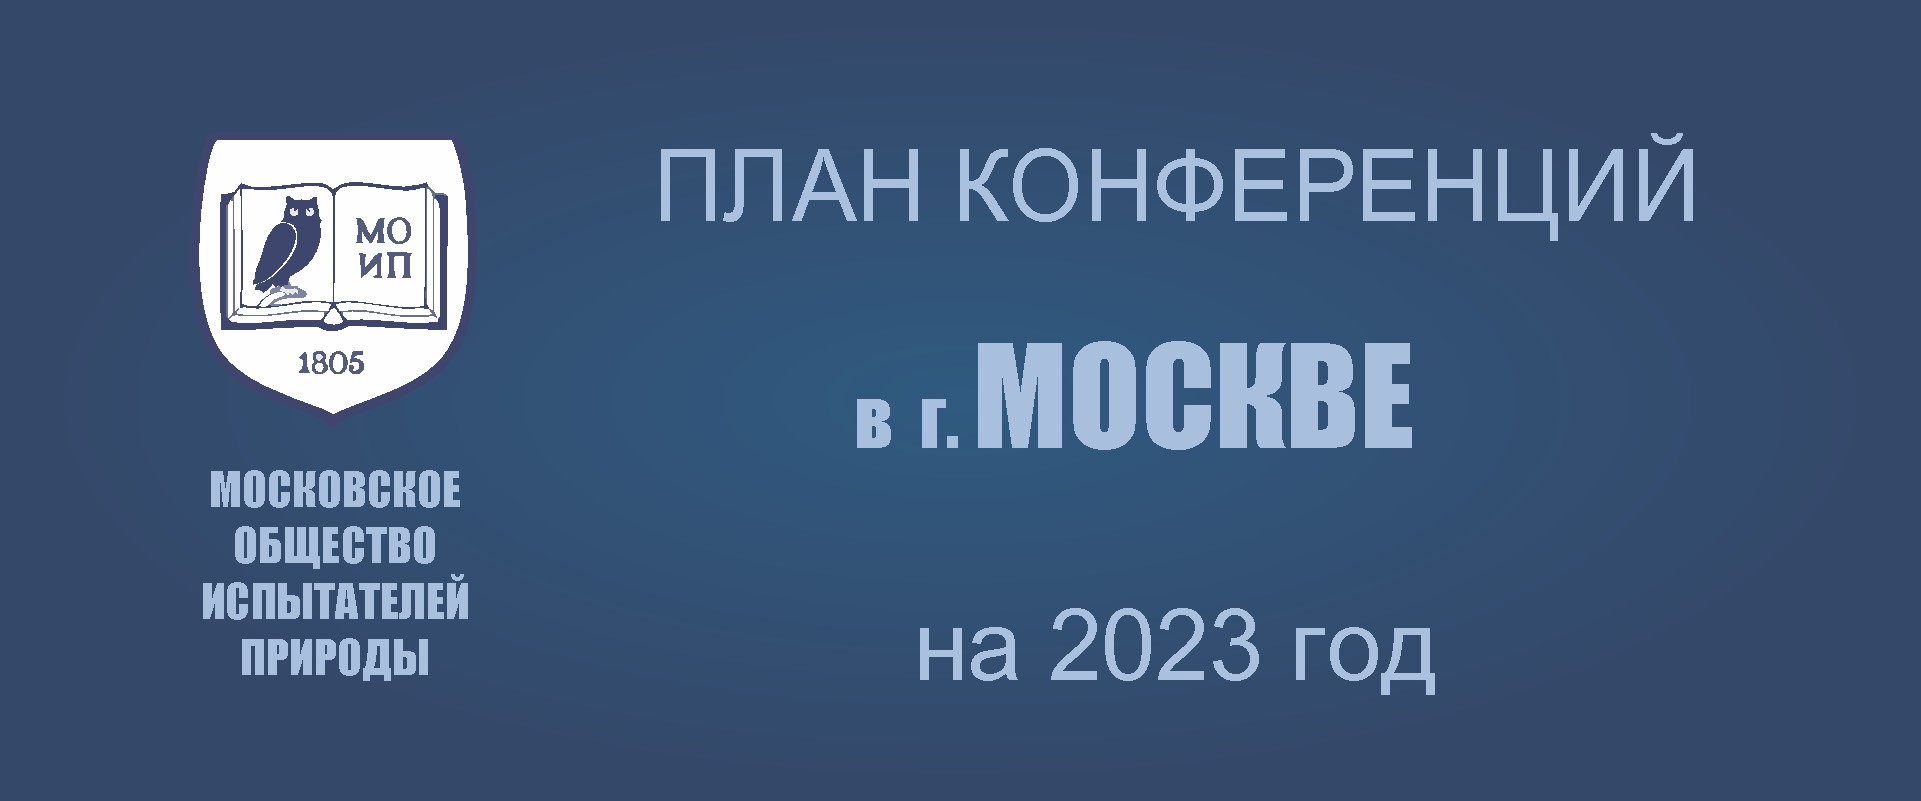 ПРЕДСТОЯЩИЕ КОНФЕРЕНЦИИ В МОСКВЕ в 2023г.